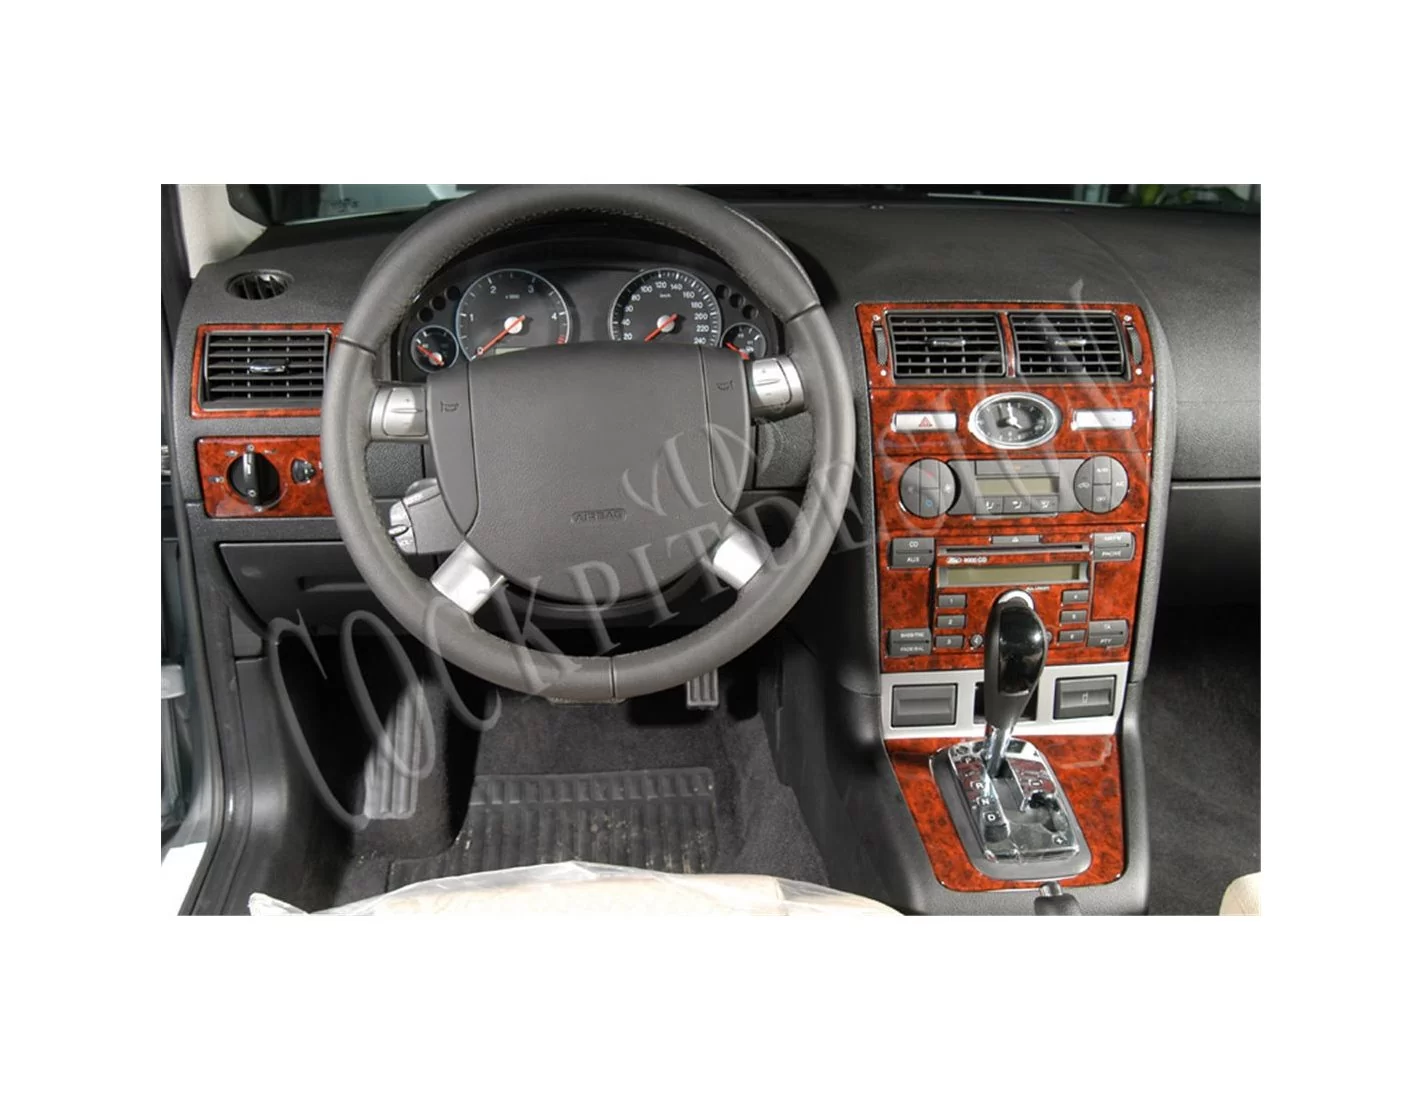 Ford Mondeo 06.03 - 06.06 Mittelkonsole Armaturendekor Cockpit Dekor 13 -Teile